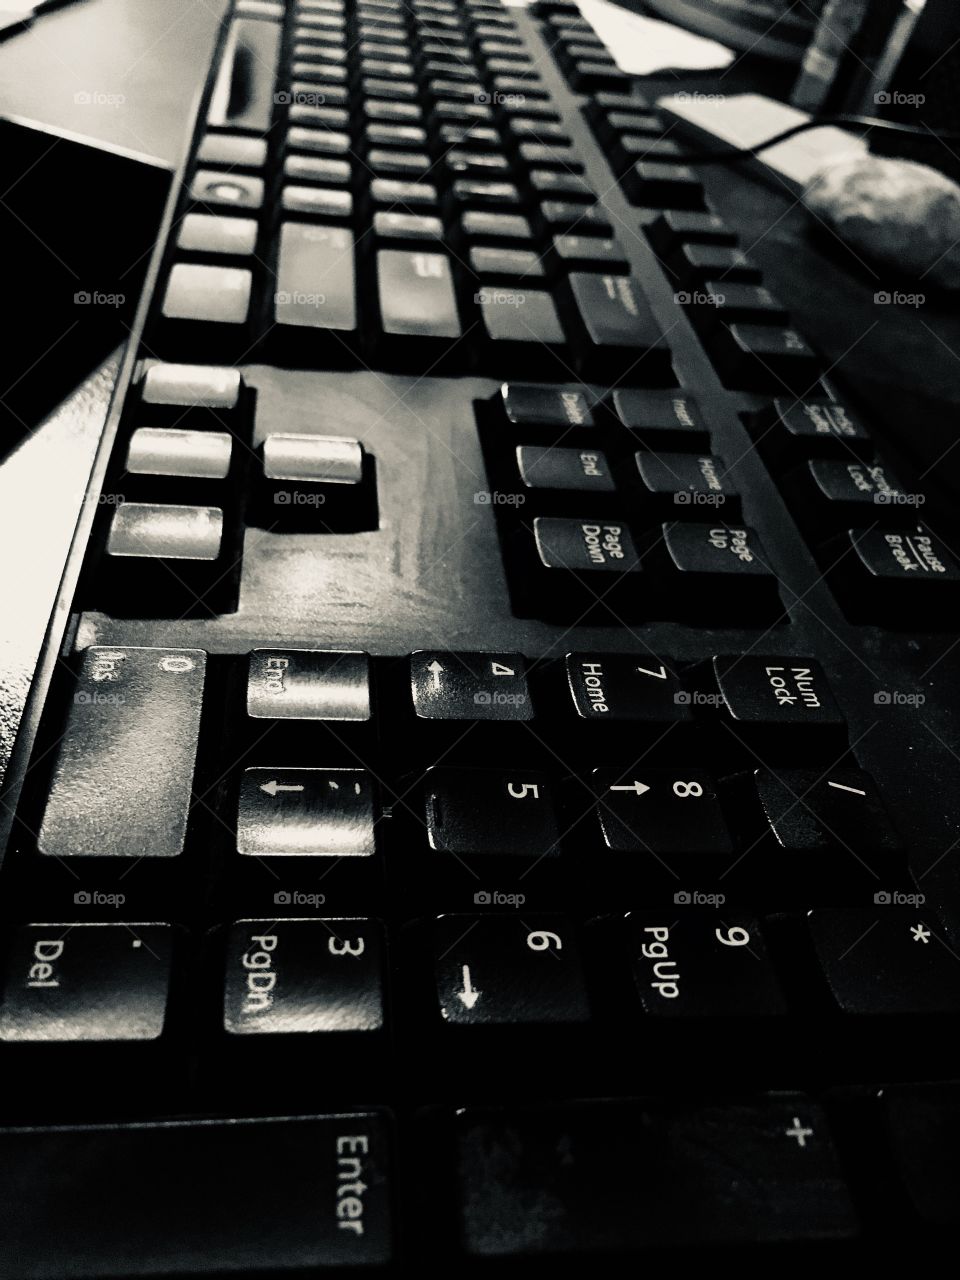 Keys on a typing keyboard 